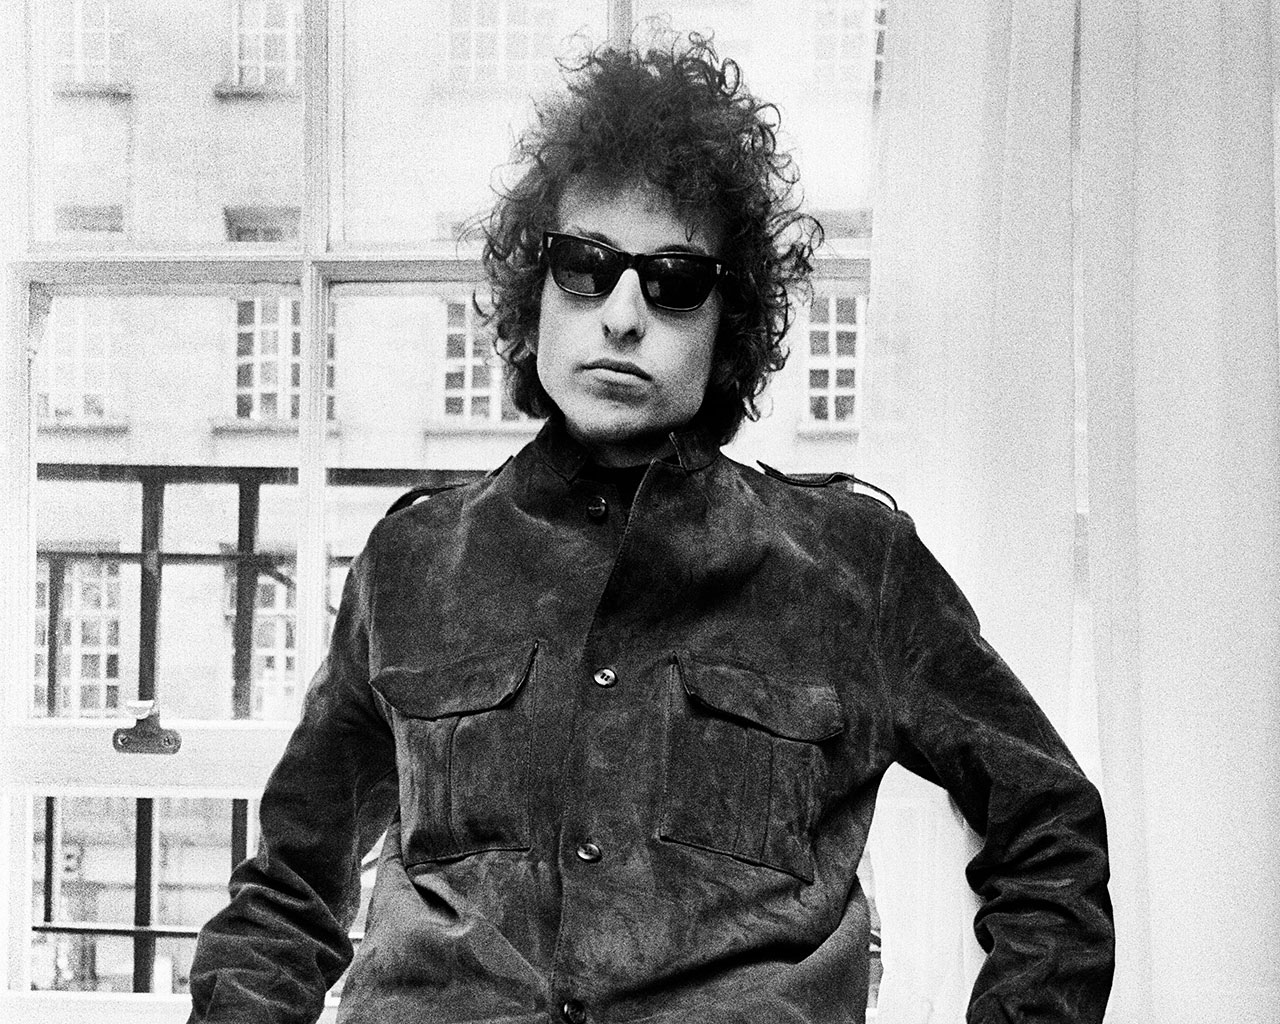 Bob Dylan at a press conference